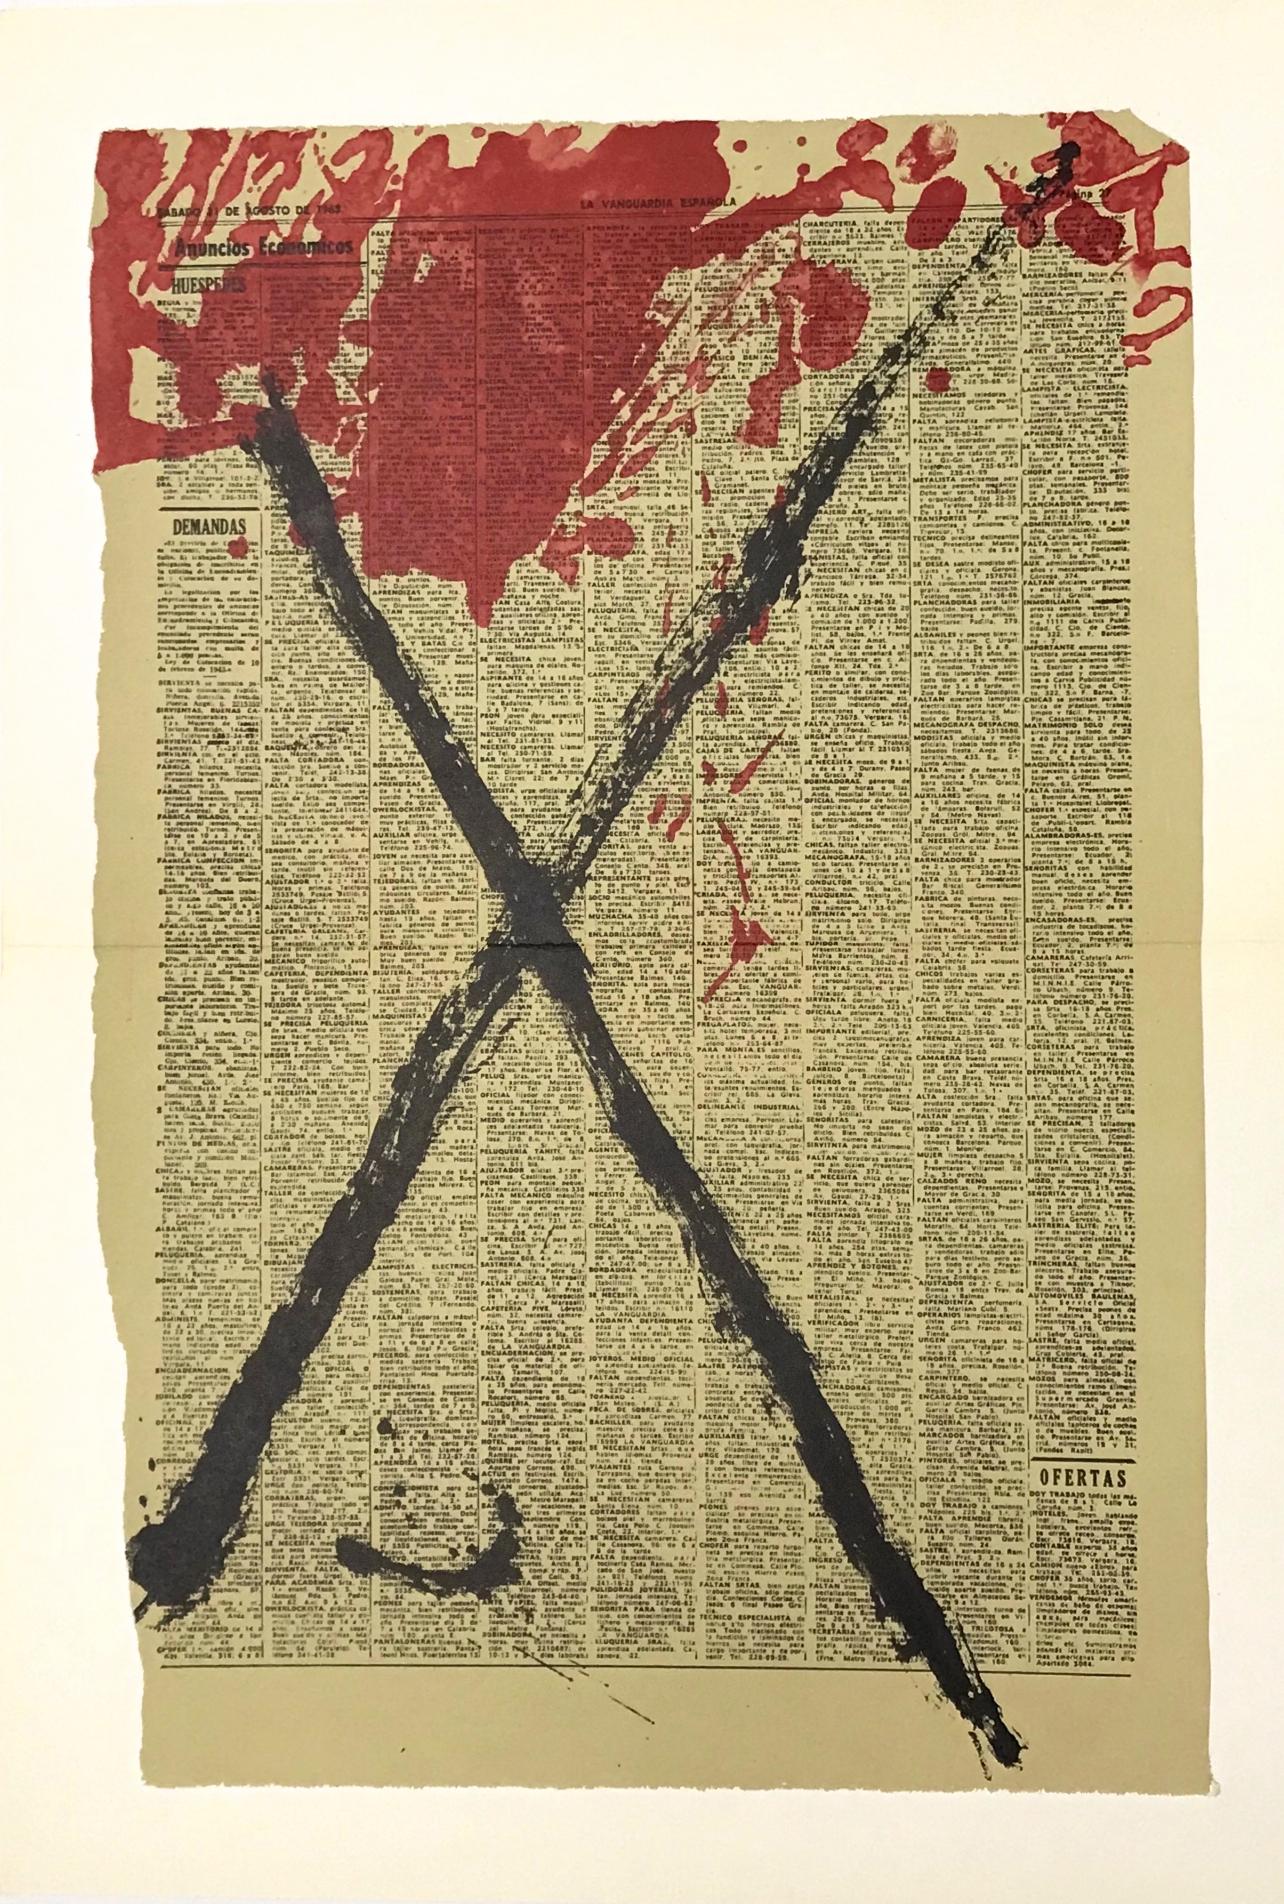 Abstract Print Antoni Tàpies - Tàpies, Composition, Derrière le miroir (après)